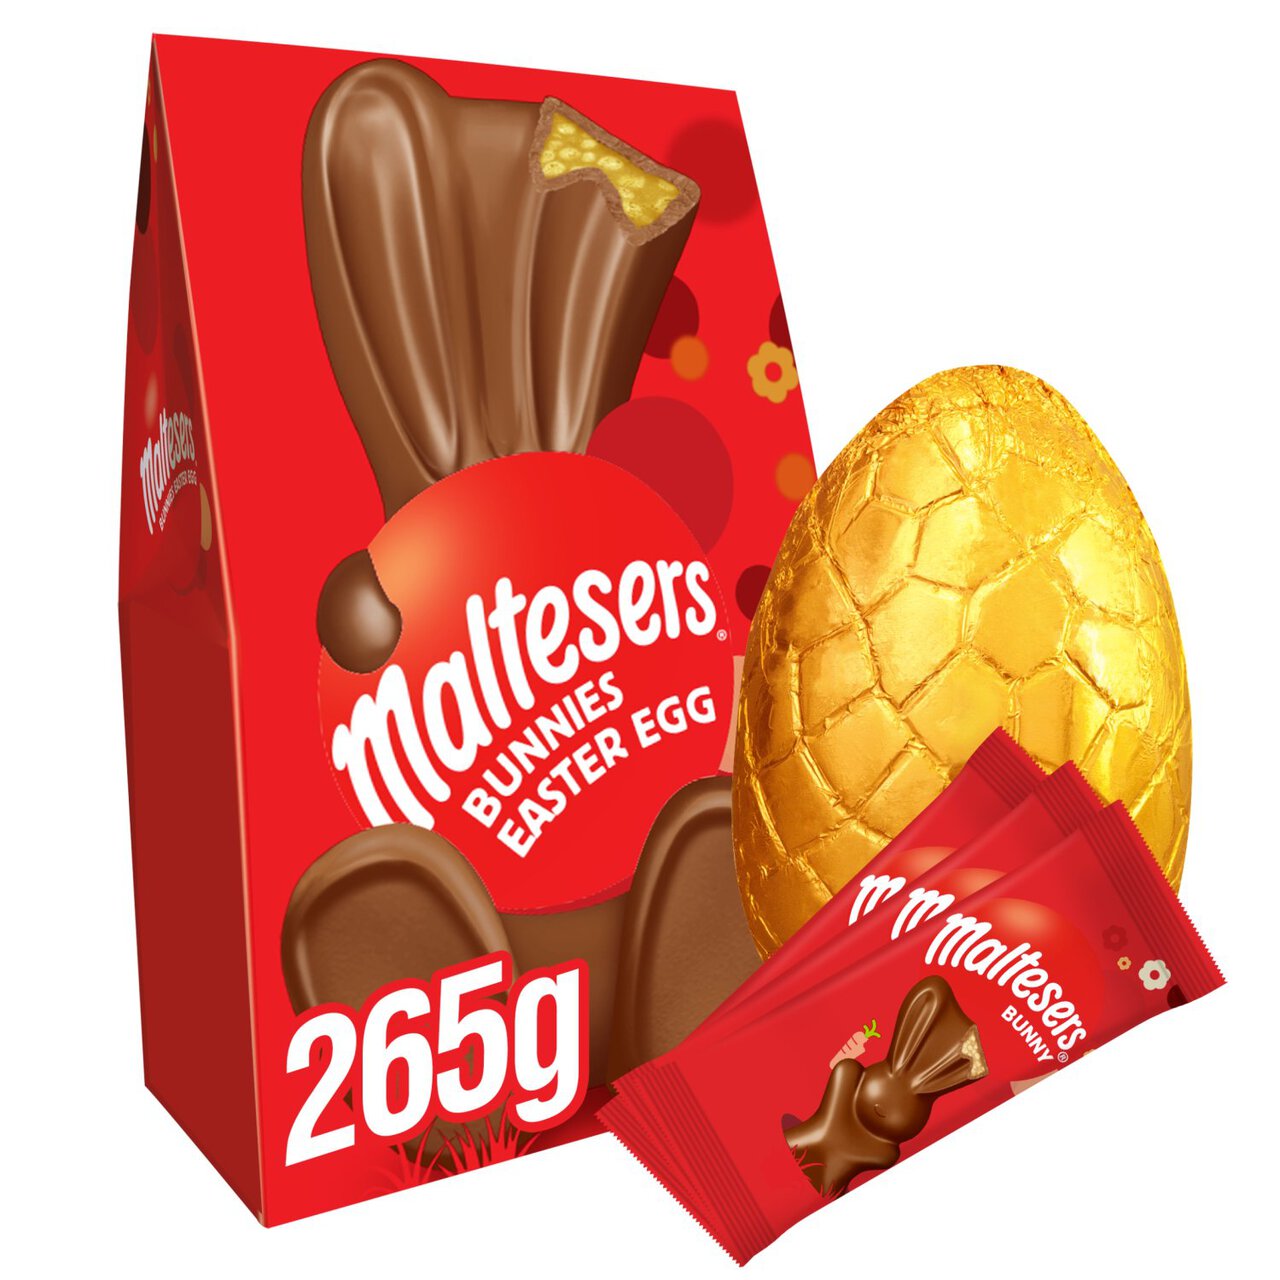 Maltesers Luxury Easter Egg 265g